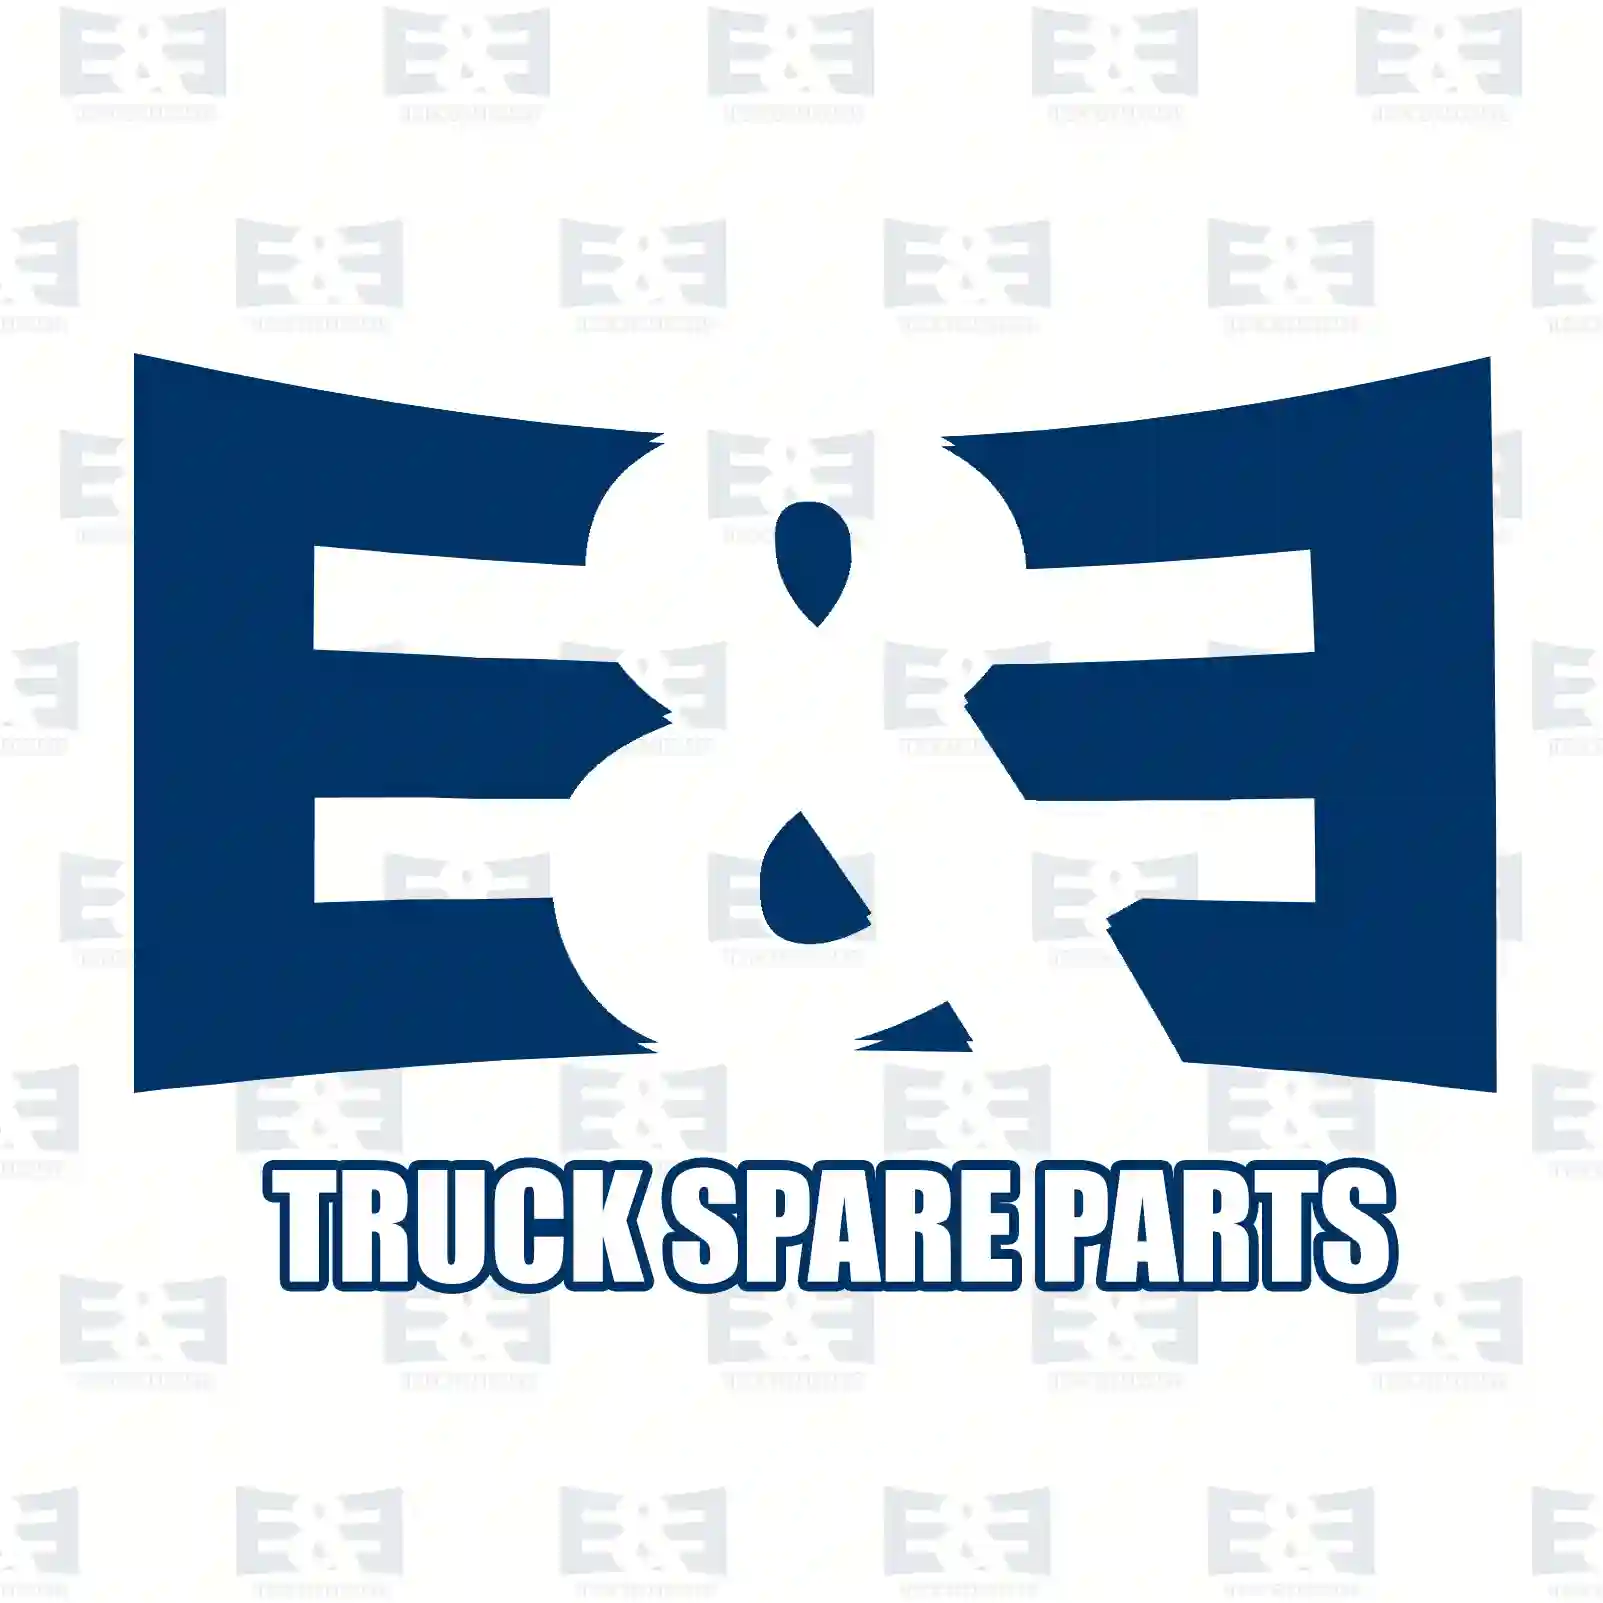 Nut, 2E2285213, 000934006012, 304032006005, ||  2E2285213 E&E Truck Spare Parts | Truck Spare Parts, Auotomotive Spare Parts Nut, 2E2285213, 000934006012, 304032006005, ||  2E2285213 E&E Truck Spare Parts | Truck Spare Parts, Auotomotive Spare Parts